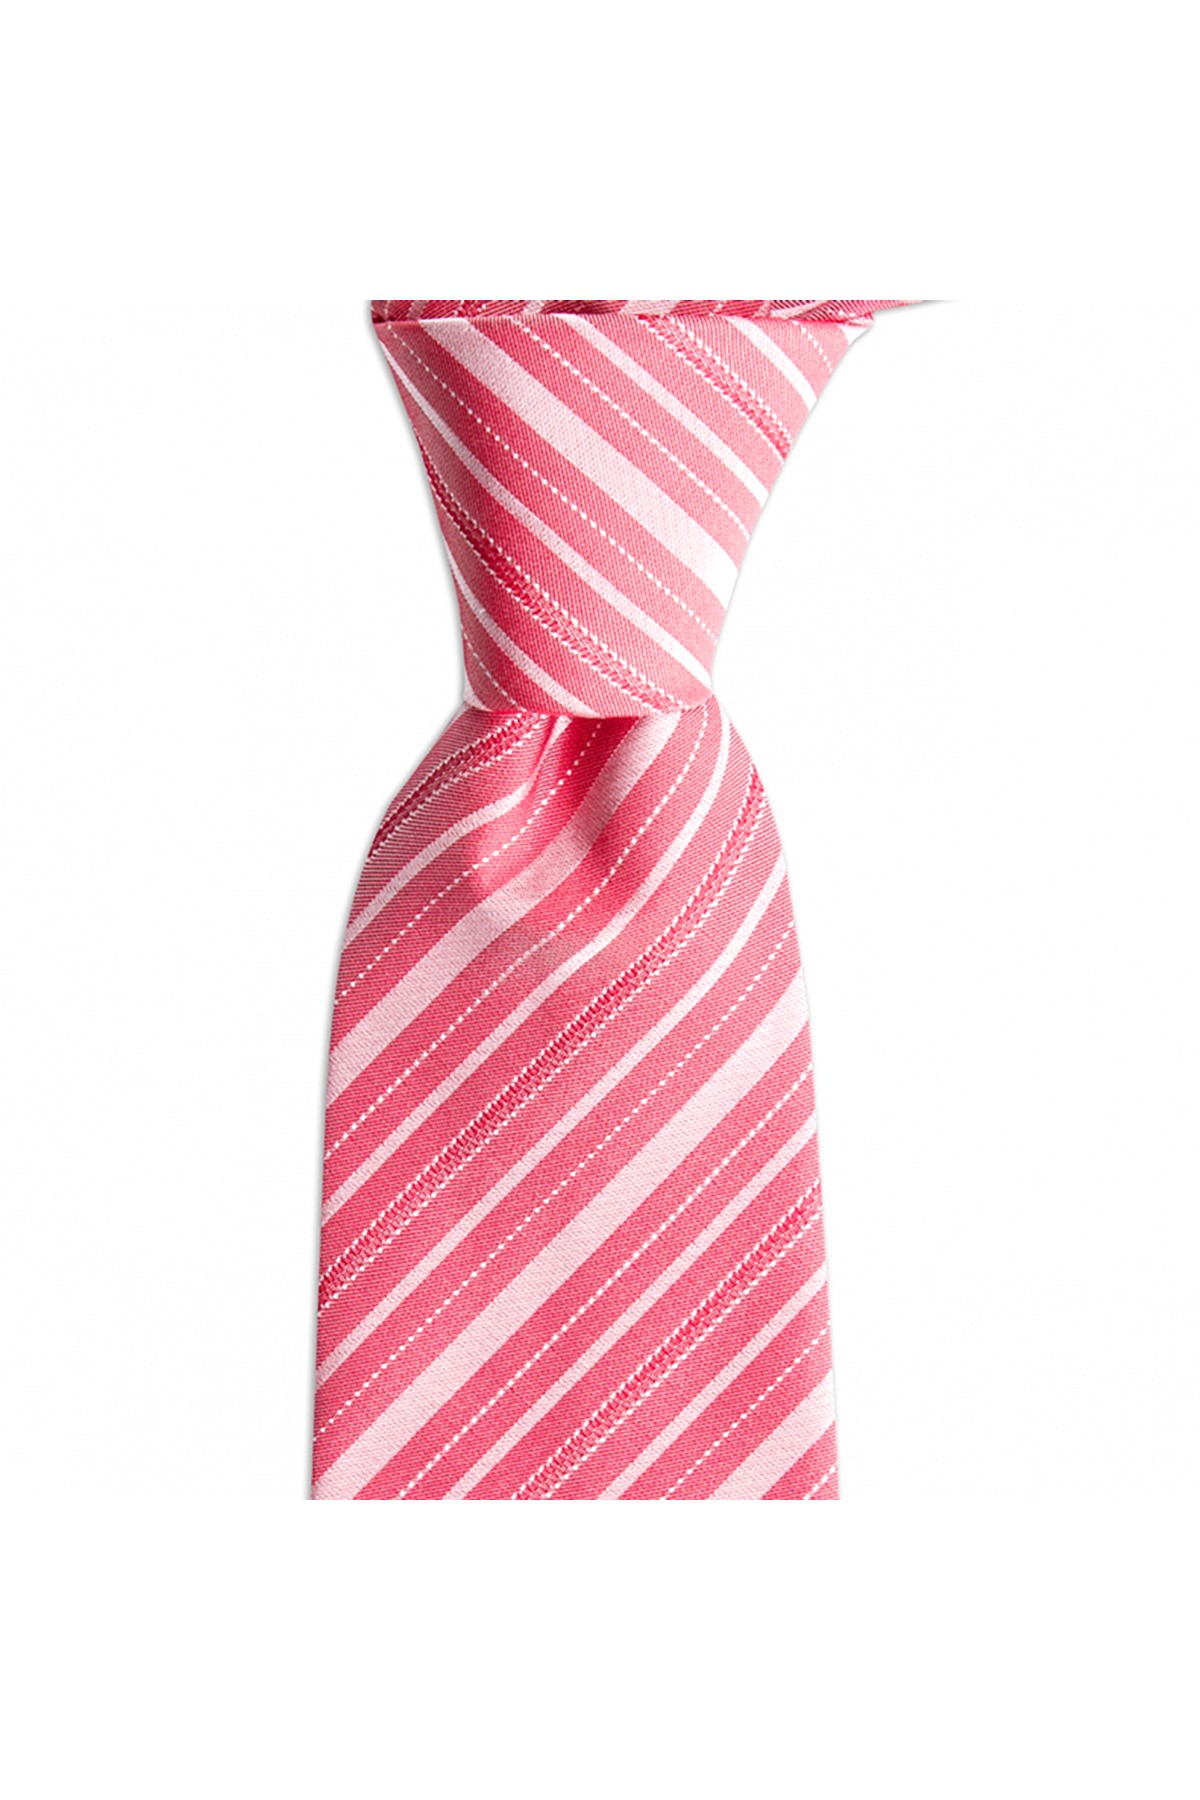 İnce çizgili 8 cm genişliğinde klasik ipek kravat - Somon